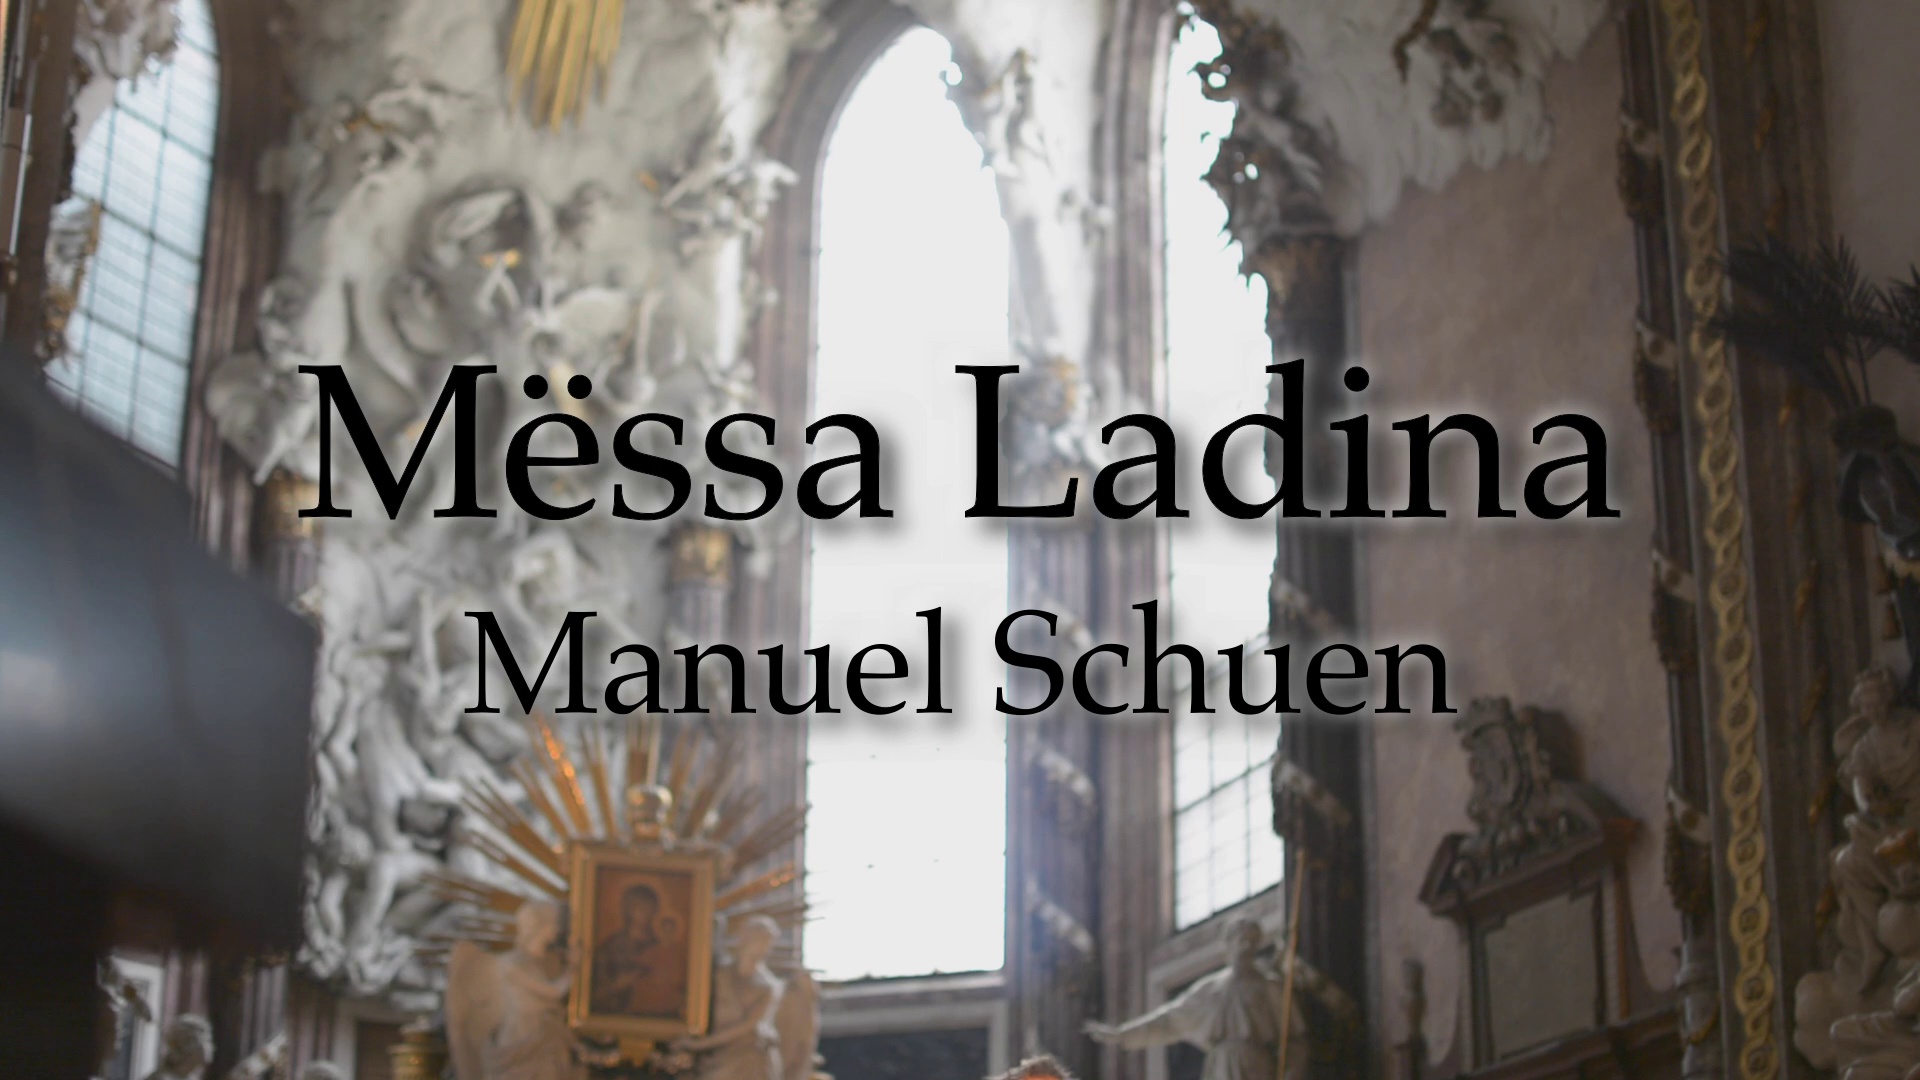 Mёssa Ladina für Chor a cappella von Manuel Schuen - Vorschaubild Video